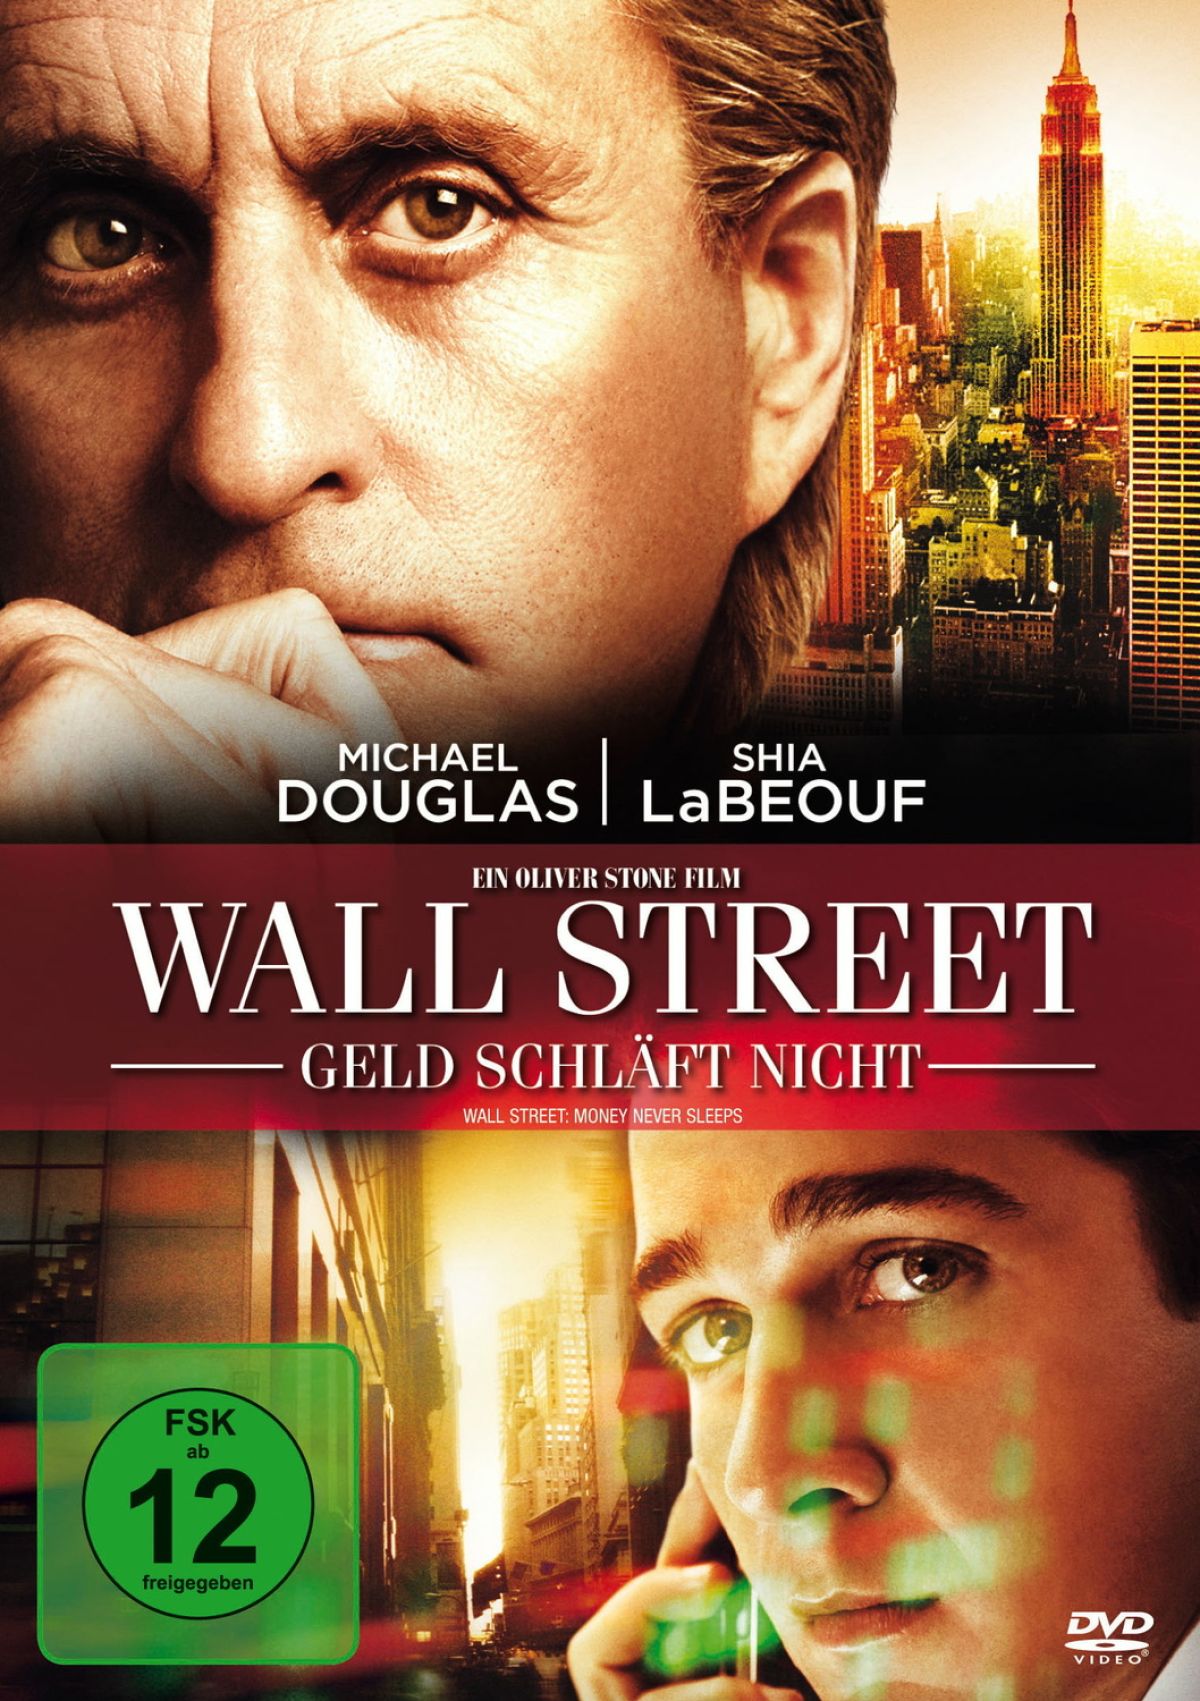 Wall Street - Geld schläft nicht (inkl. Digital Copy) von Fox